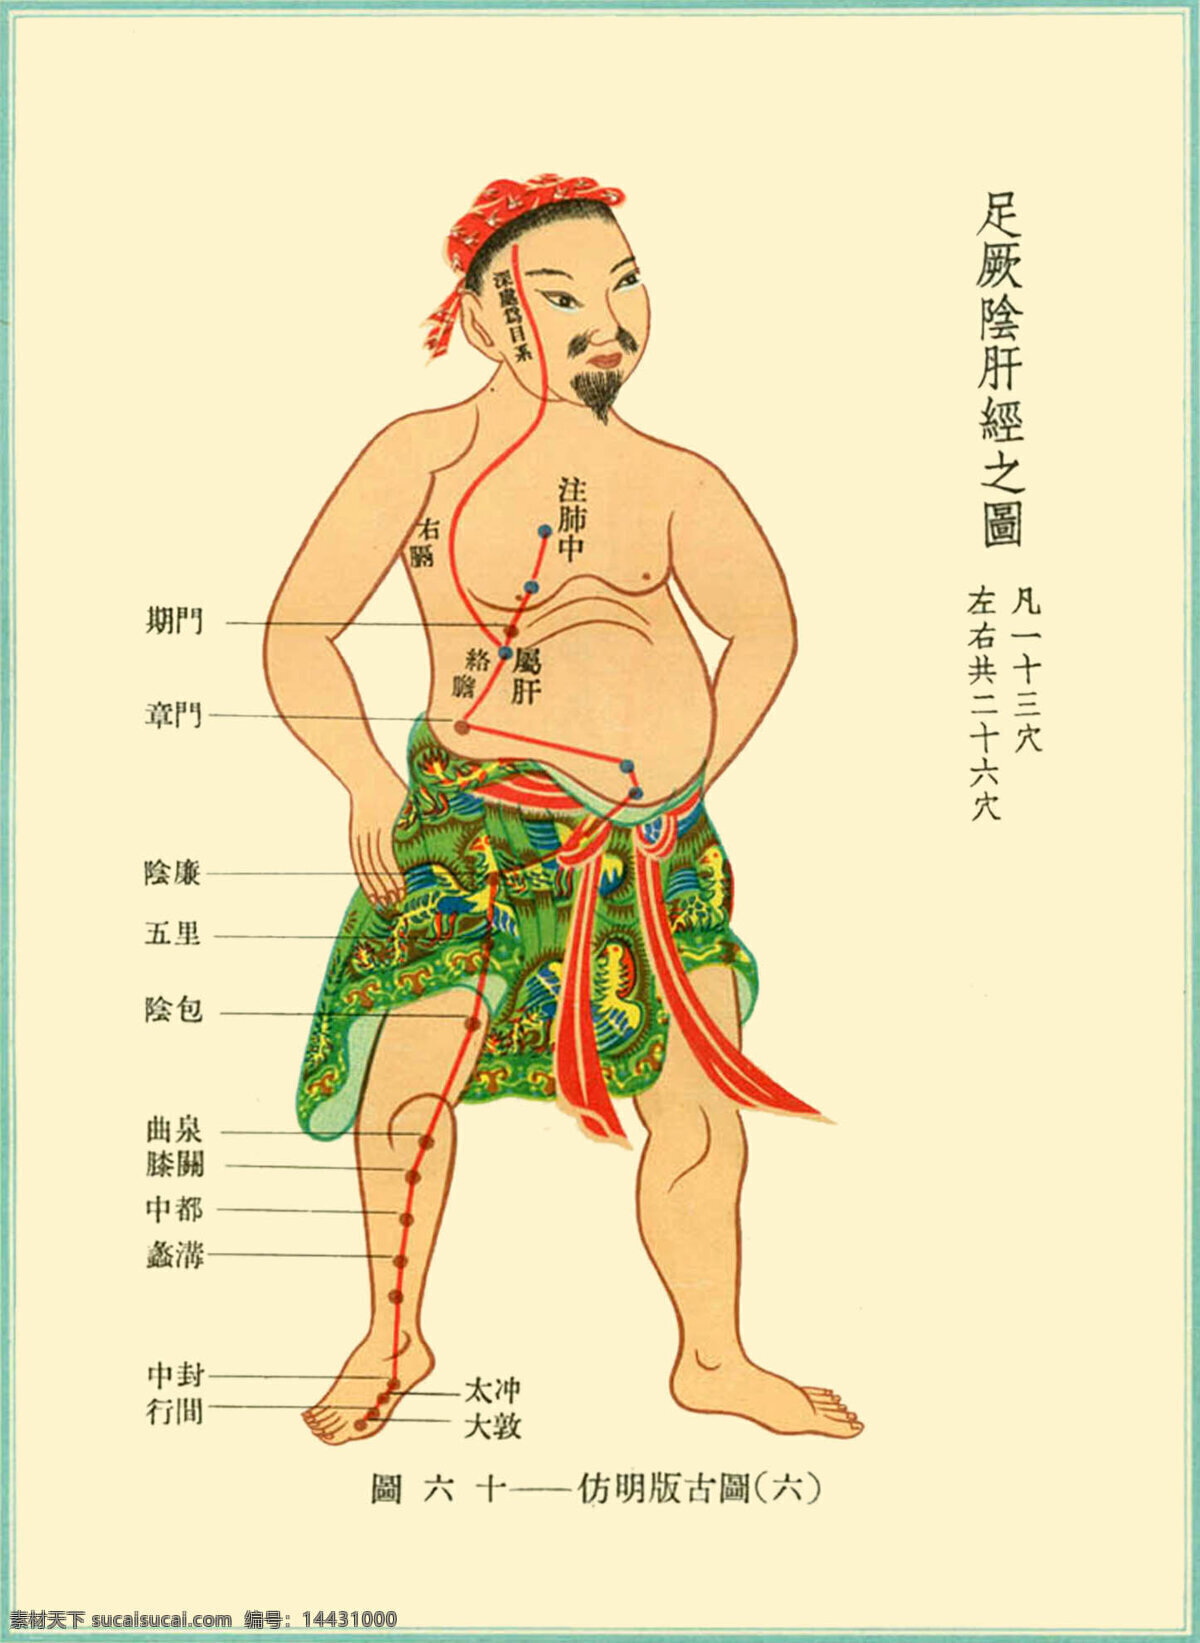 足厥阴肝经 络 图 十二经脉 针灸 足厥阴肝 中医 传统文化 文化艺术